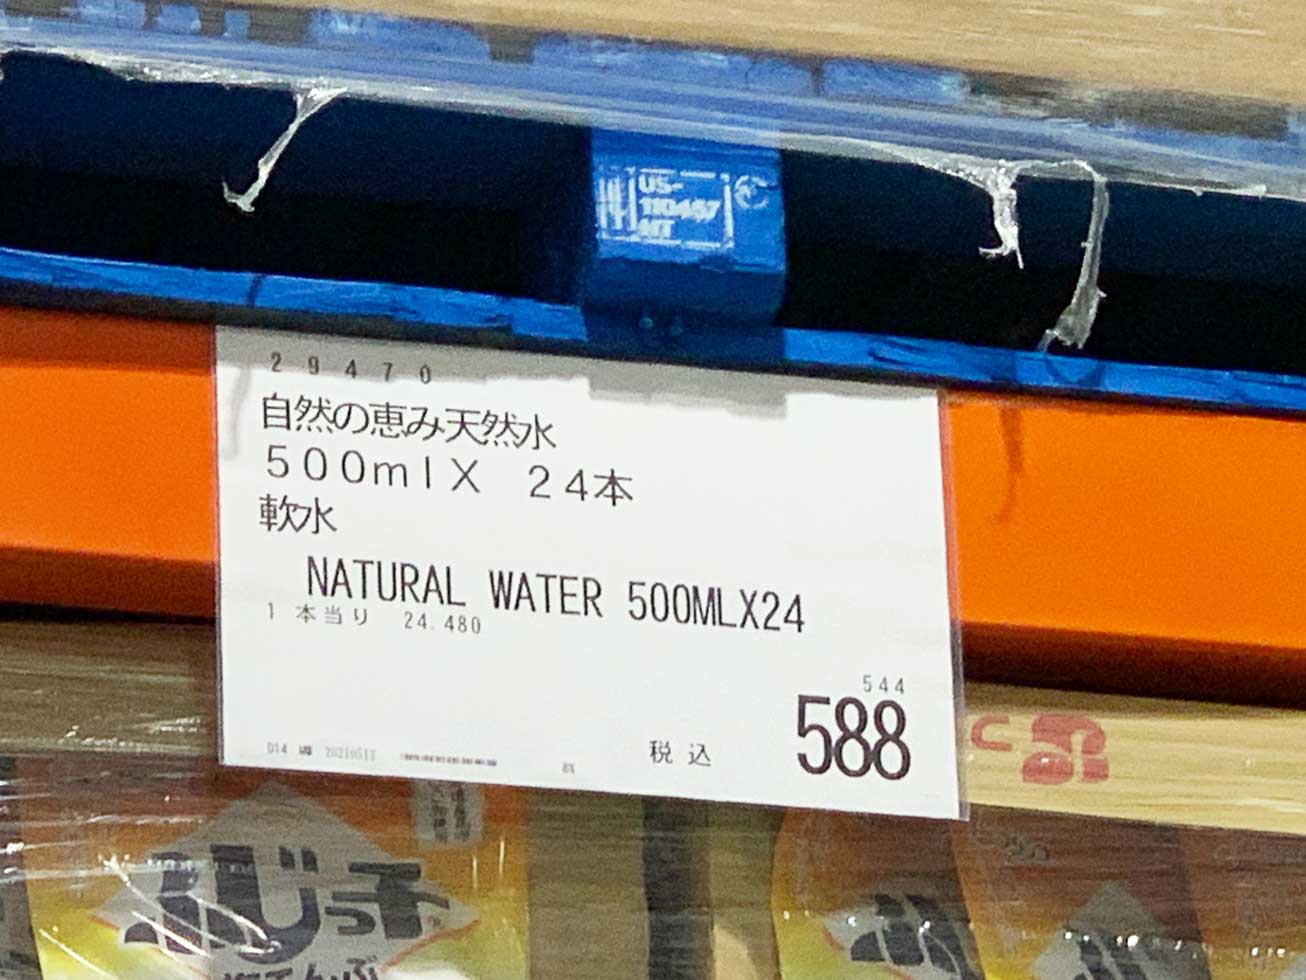 コストコの水種類一覧・価格を紹介。最安値は500mlの水1本18円と激安販売